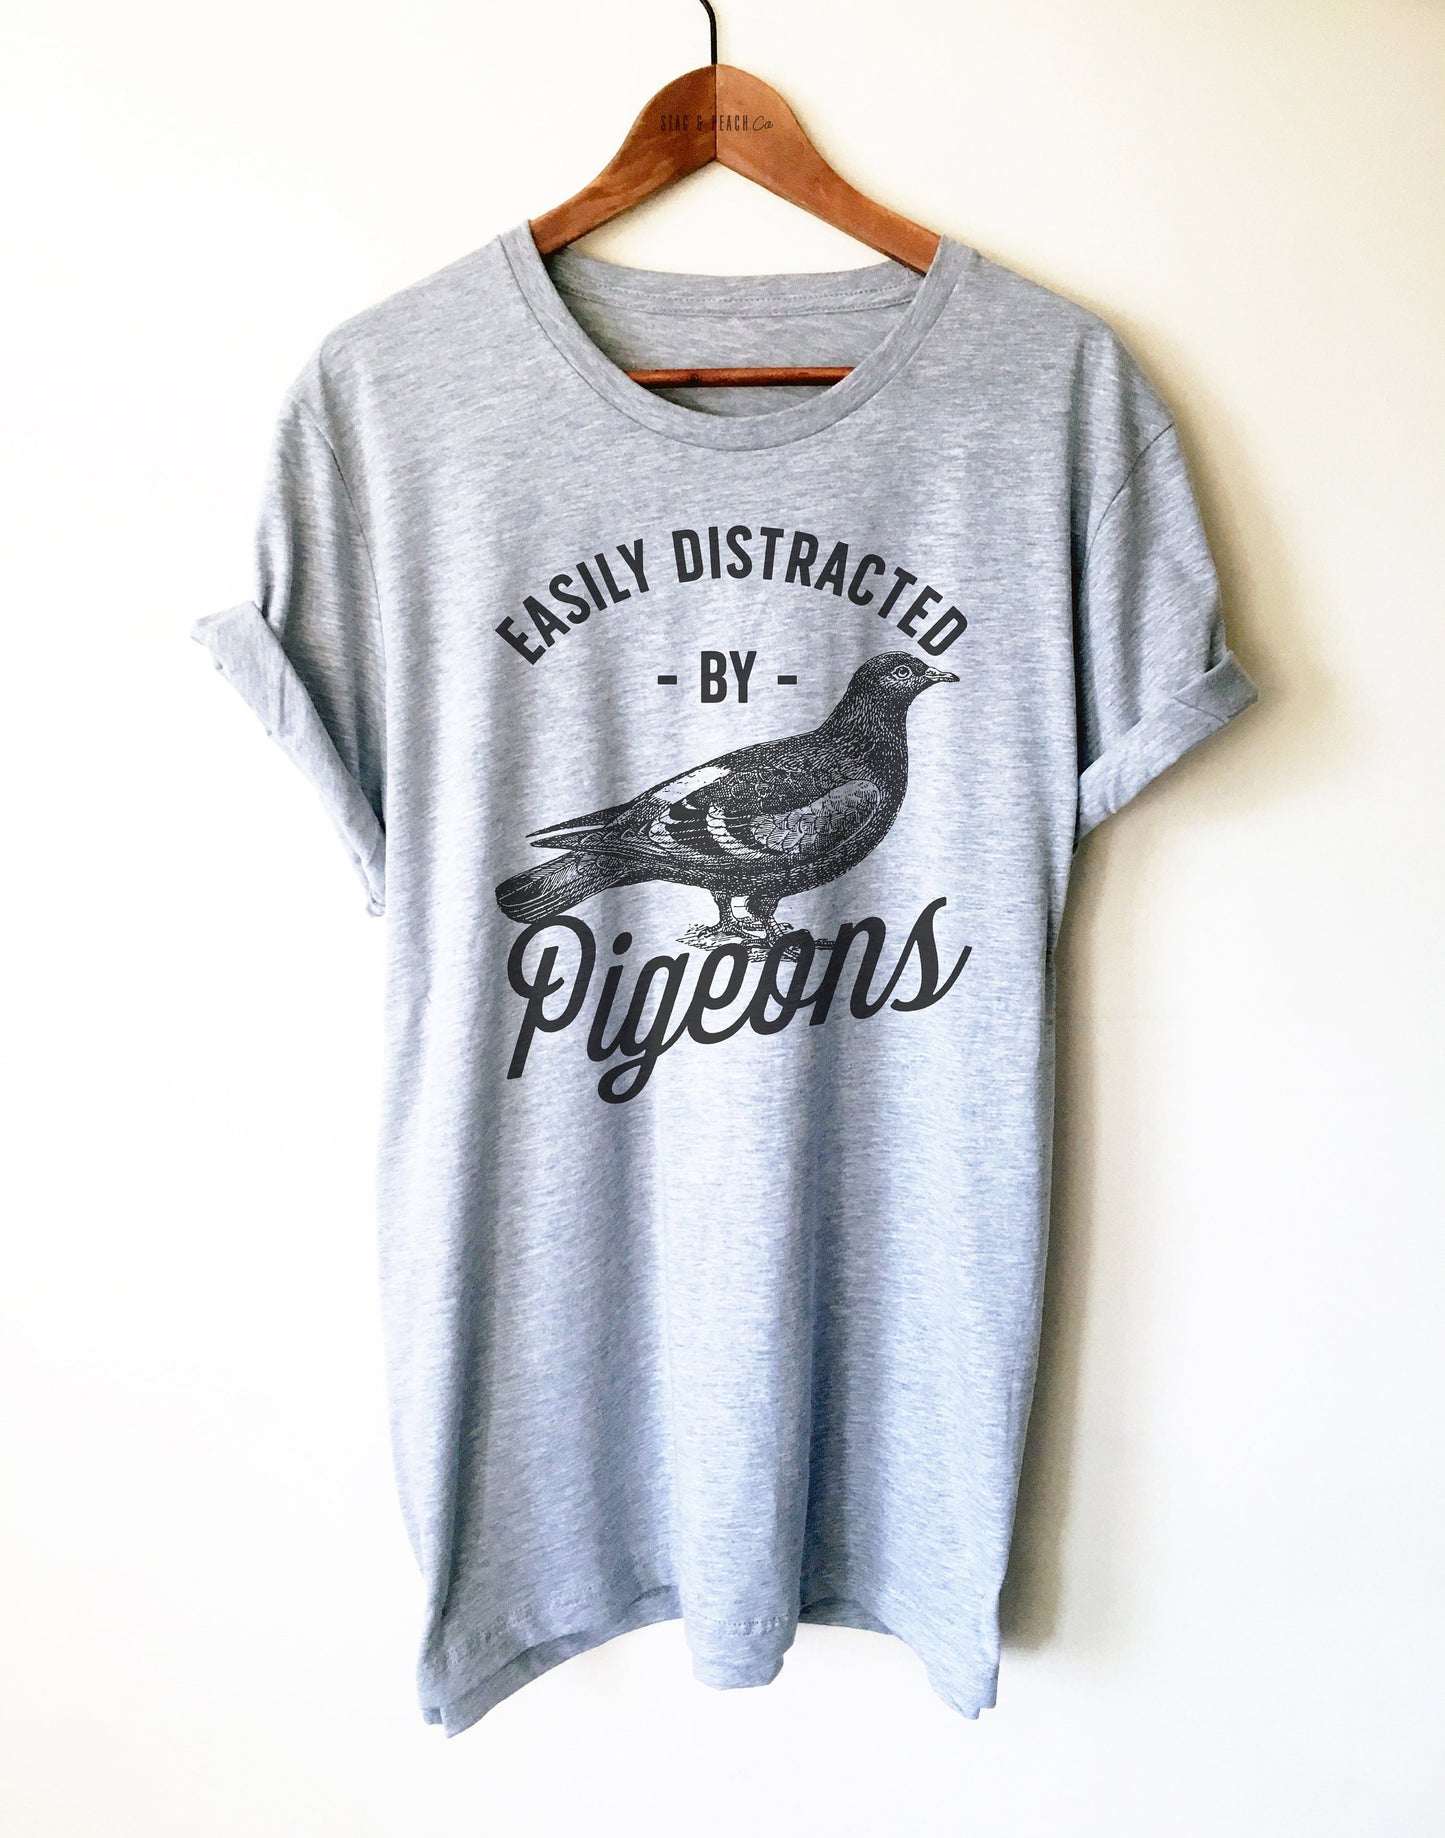 Easily Distracted By Pigeons Unisex Shirt - Bird Lover Shirt, Pigeon Keeper Gift, Pigeon Fancier Shirt, Bird Watching Shirt, Sporting Pigeon